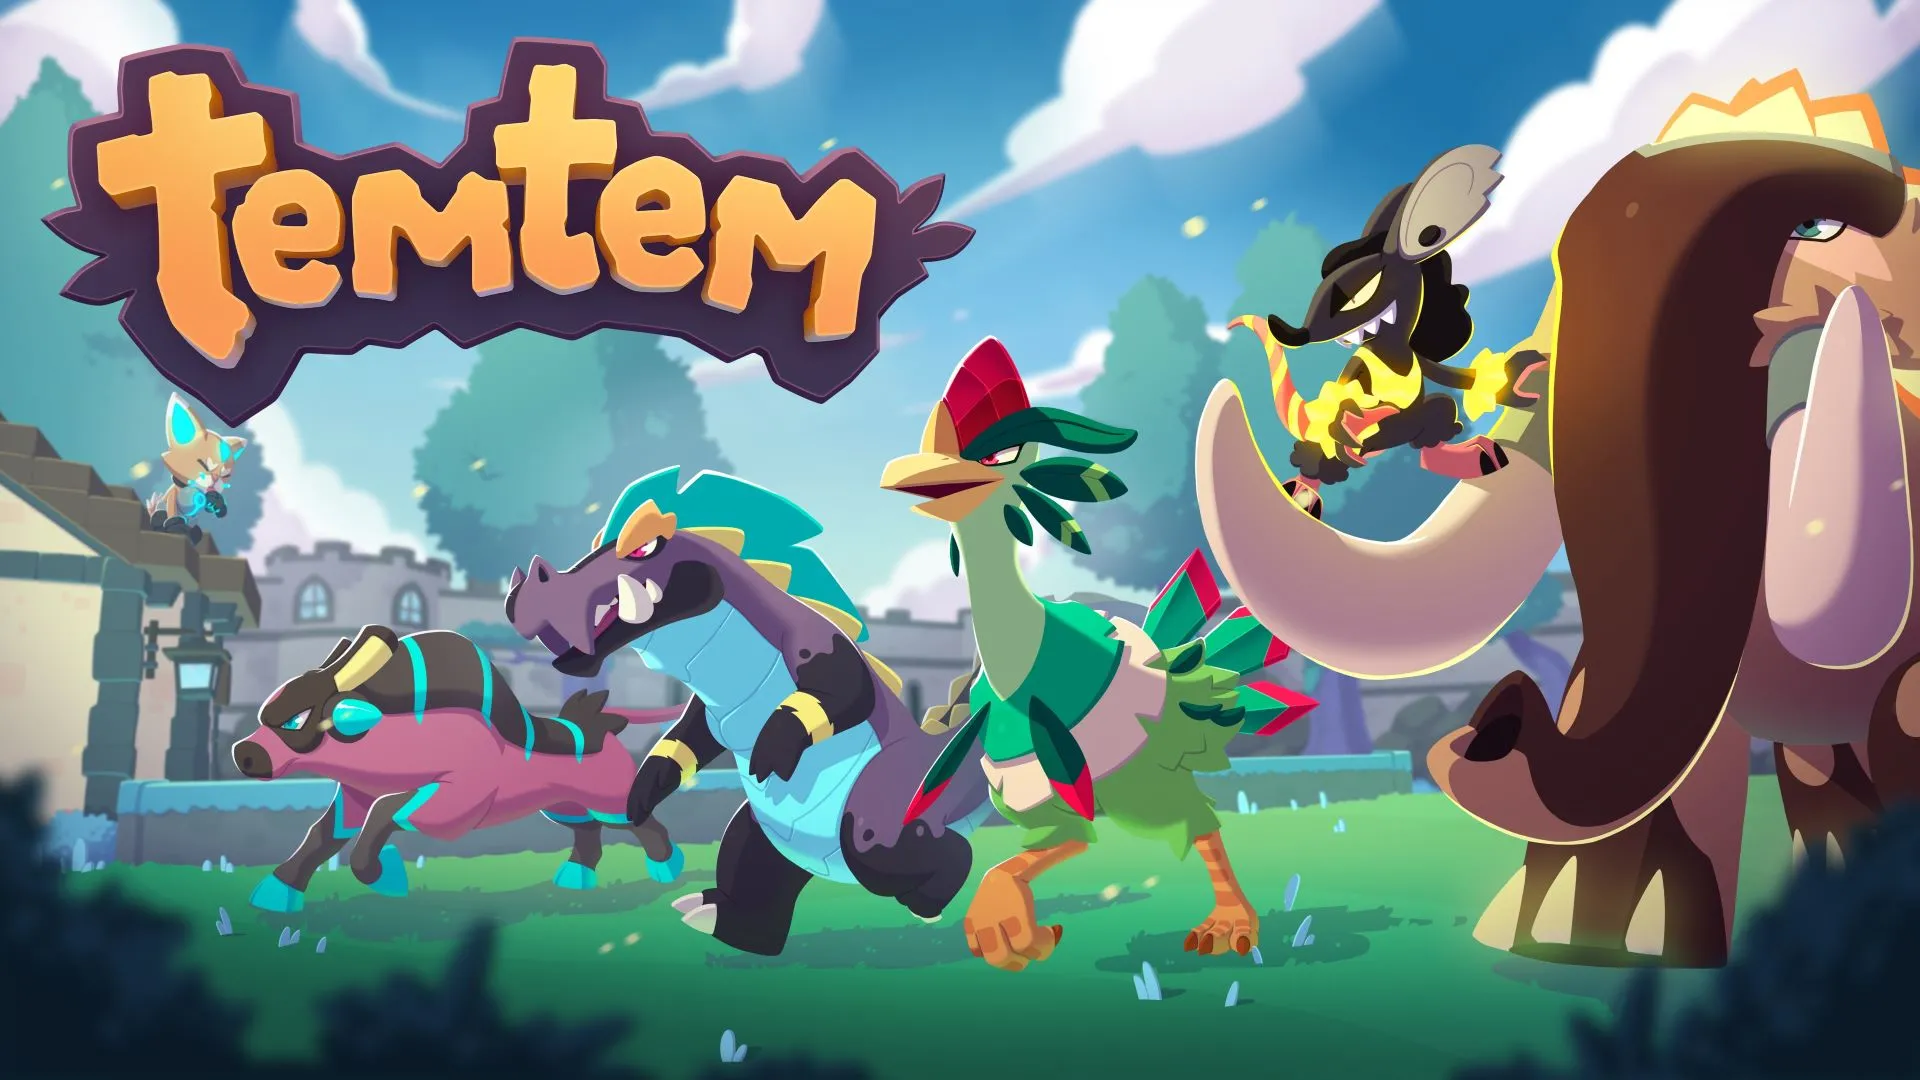 類《寶可夢》網游《Temtem》1.0 版本最新發售視頻公開